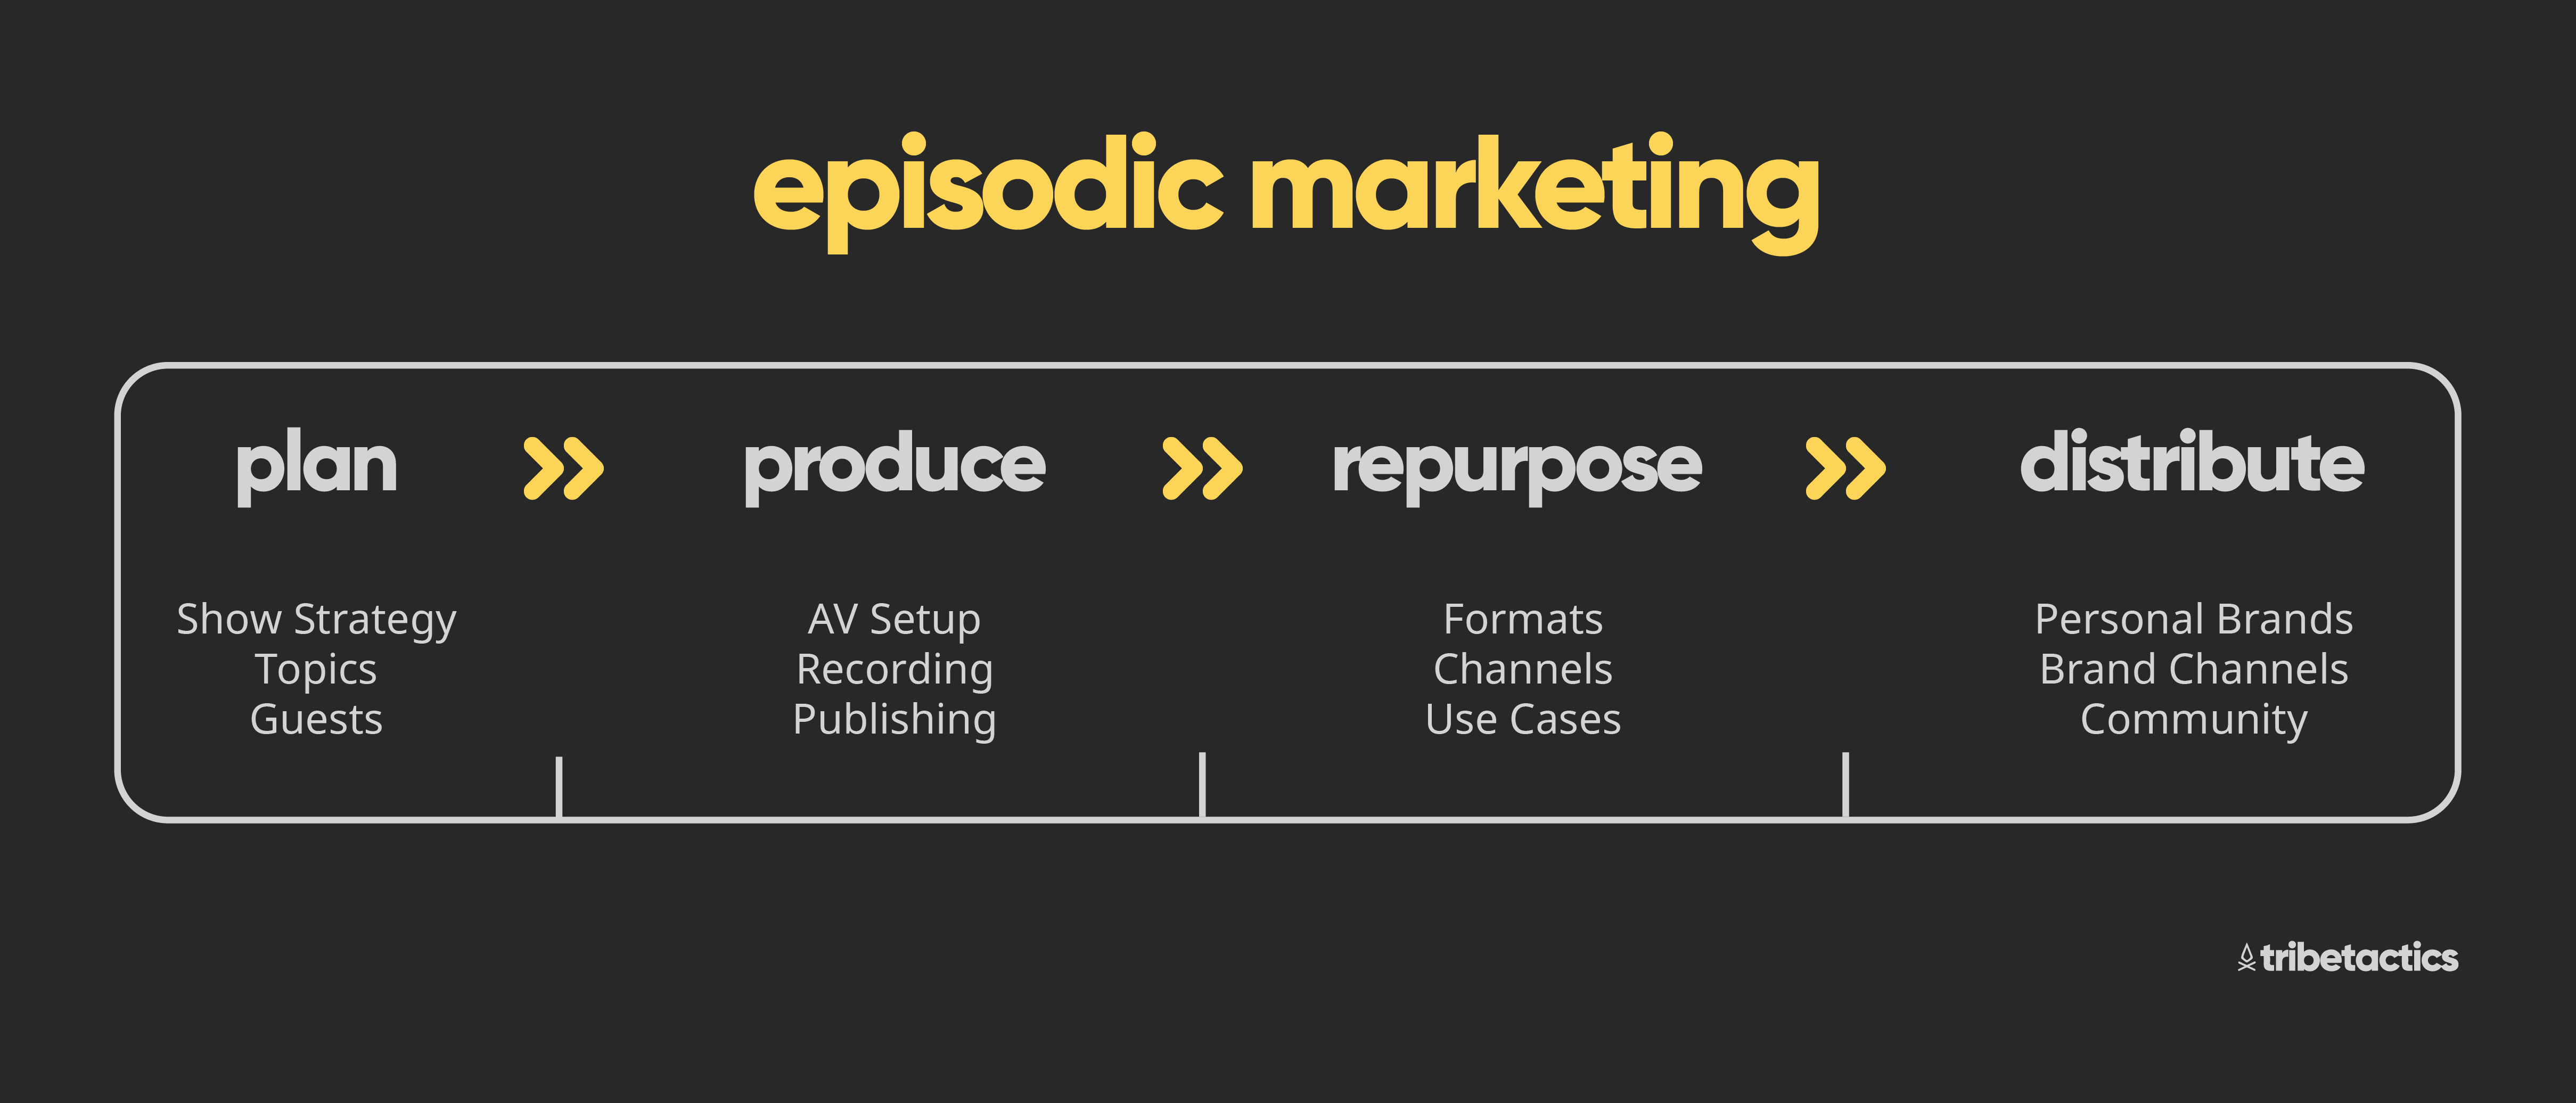 episodic-content-marketing-framework